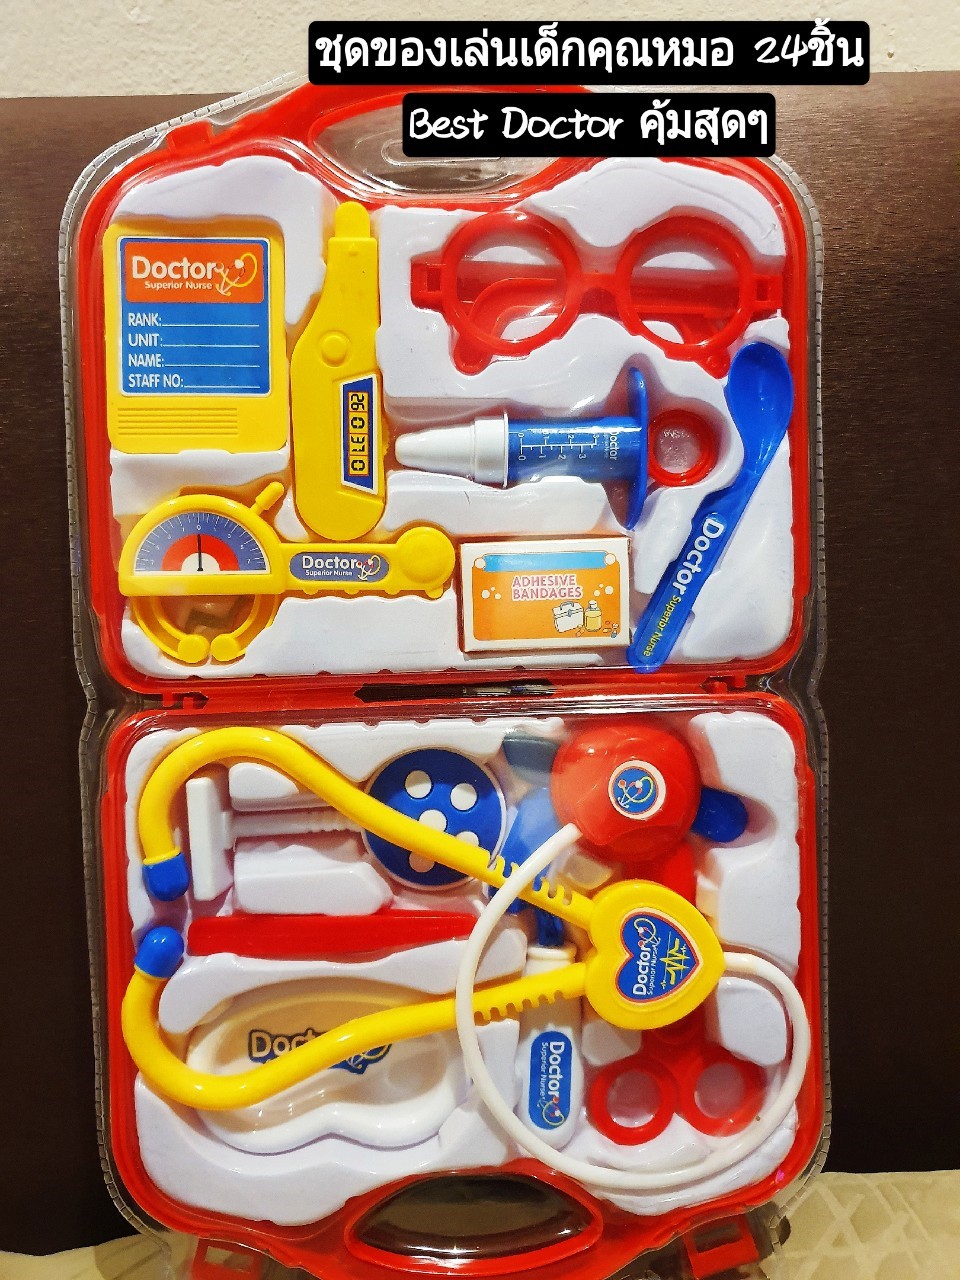 ชุดของเล่นเด็ก #Best Doctorชุดแพทย์  เสริมสร้างจินตนาการให้เด็กๆ ได้ฝึกการใช้เครื่องมือแพทย์จำลอง เสริมทักษะความคิด